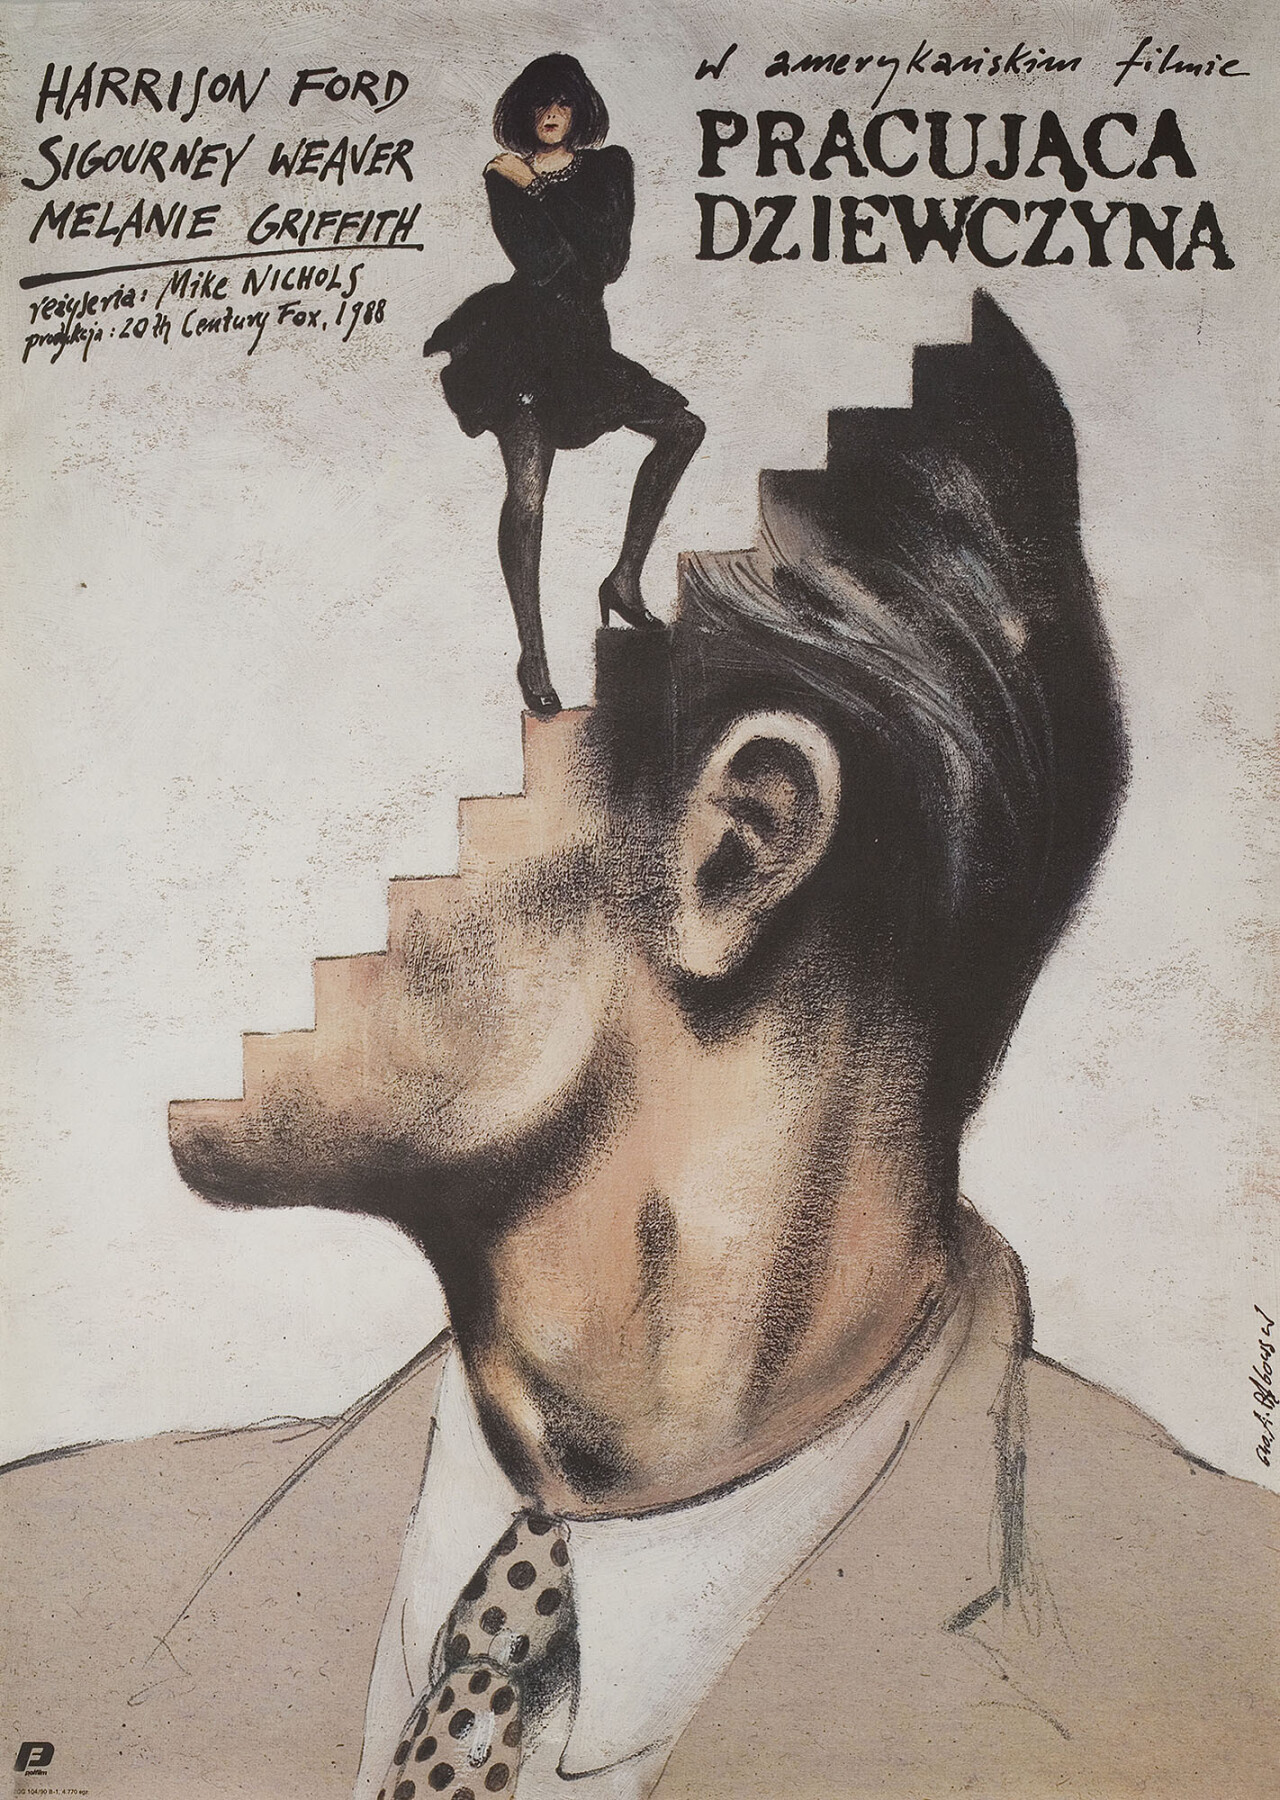 Деловая женщина (Working Girl, 1988), режиссёр Майк Николс, польский постер к фильму, автор Анджей Паговский (графический дизайн, 1990 год)